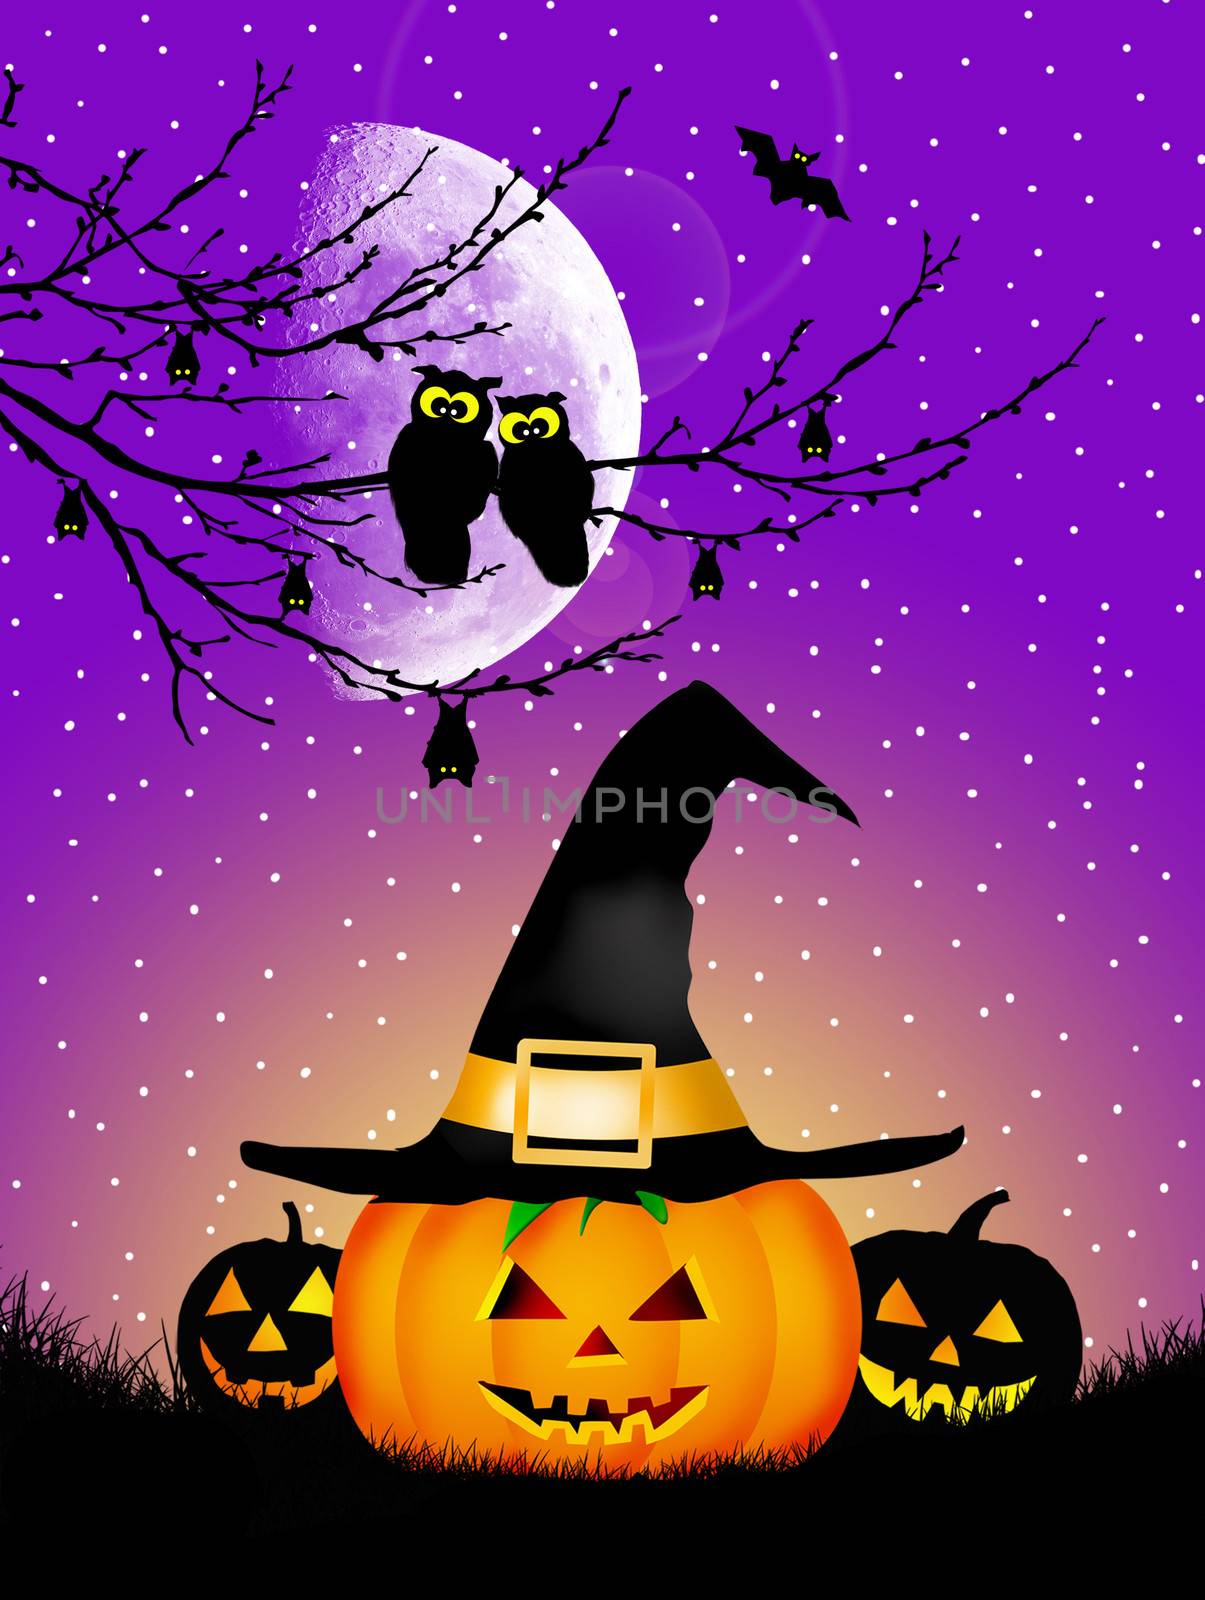 Illustration of Halloween